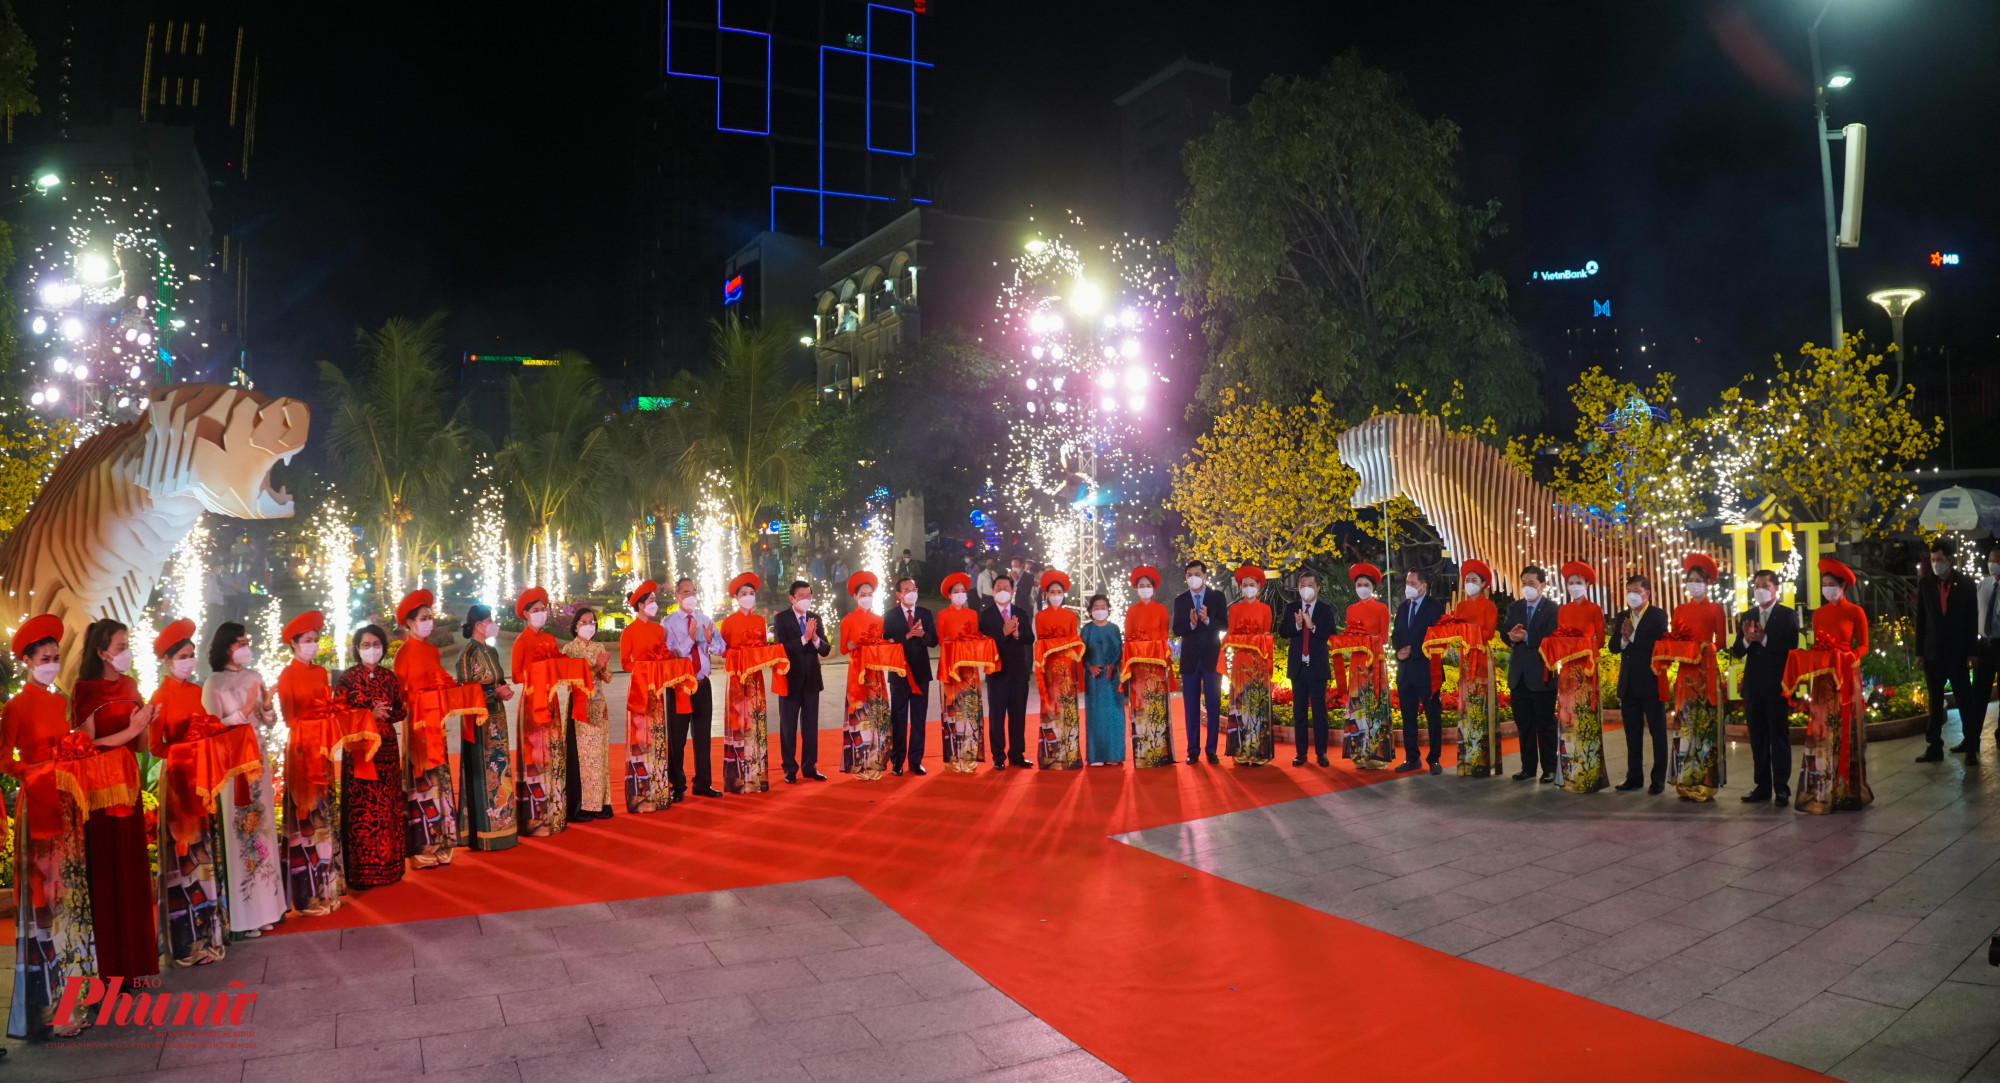 Đoàn đại biểu cắt băng khai mạc đường hoa Nguyễn Huệ năm 2022